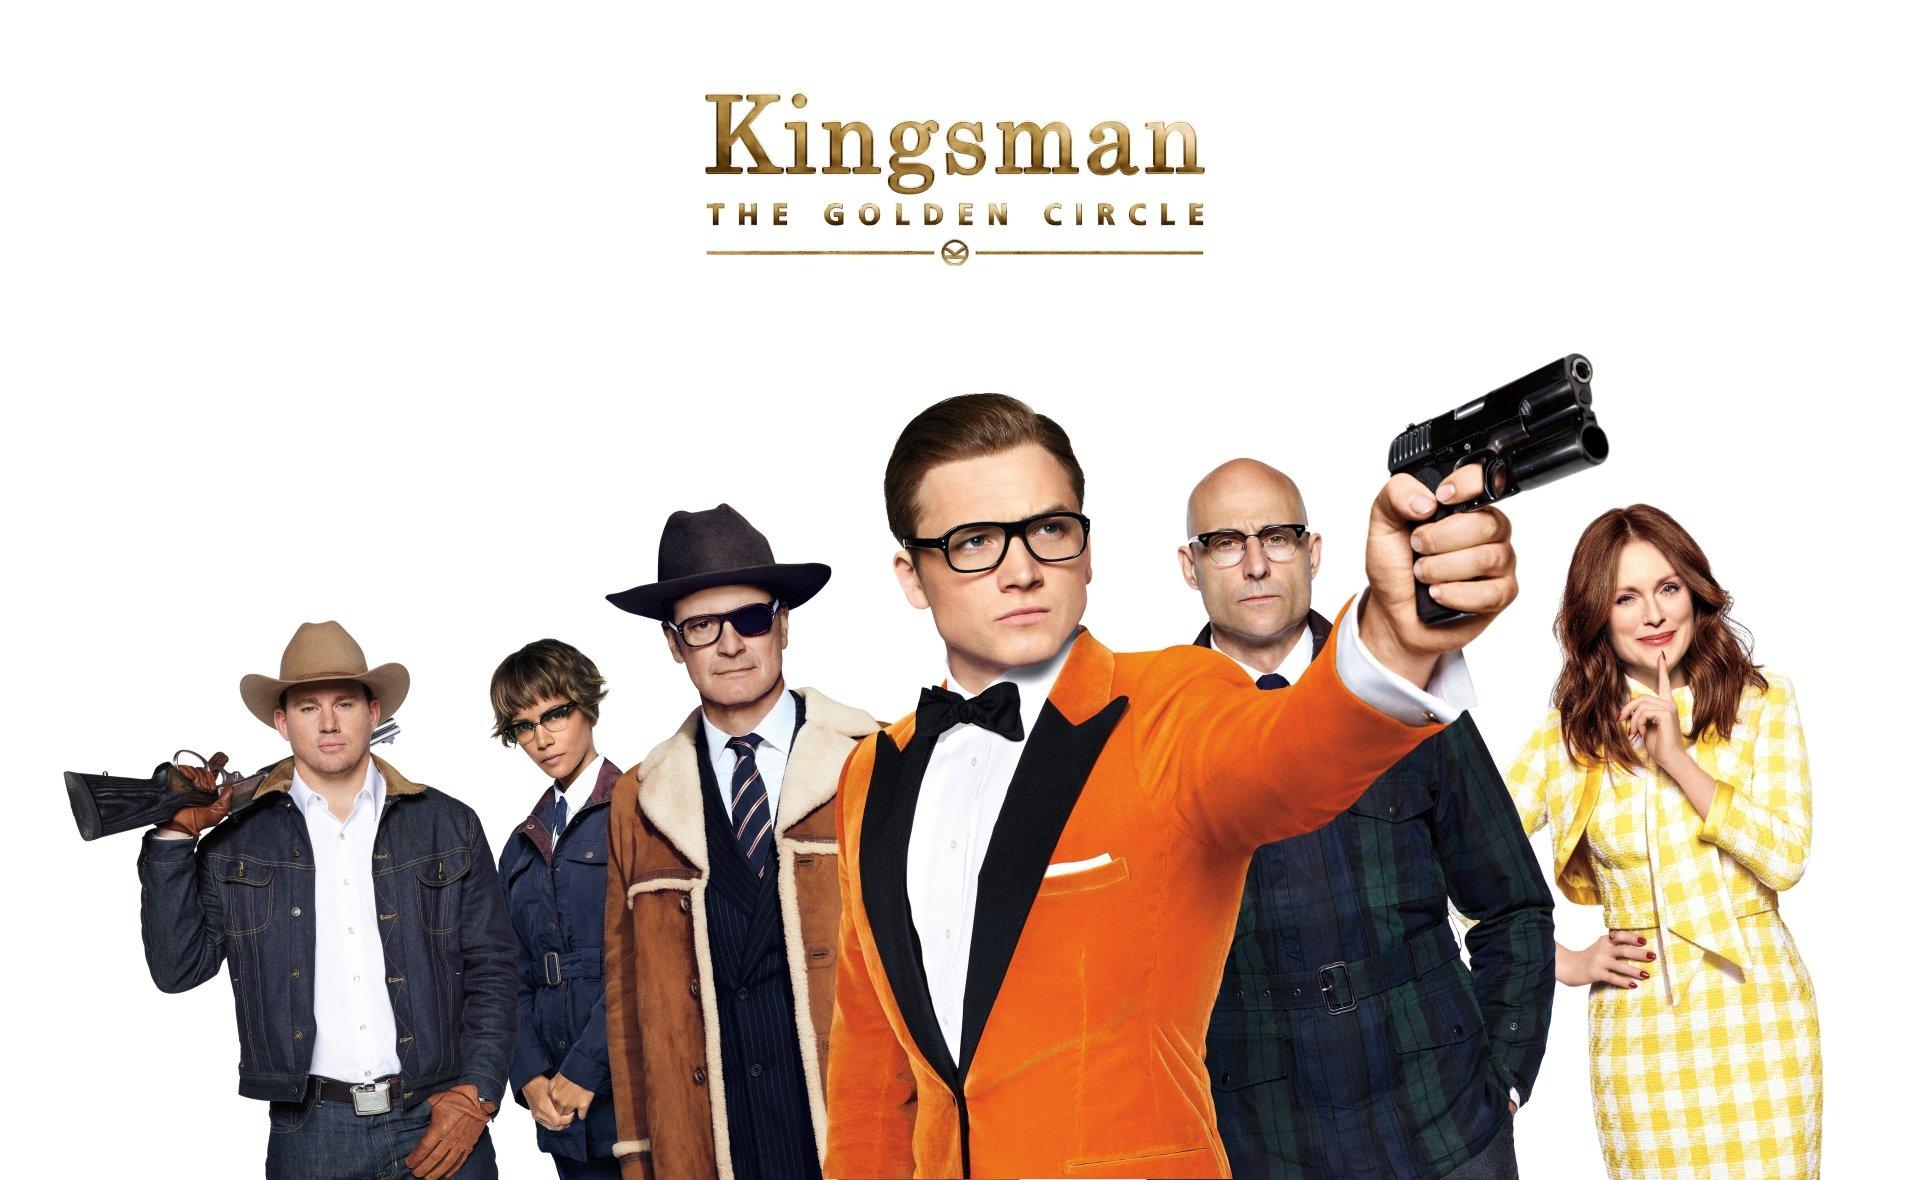 the kingsman 2 watch online free